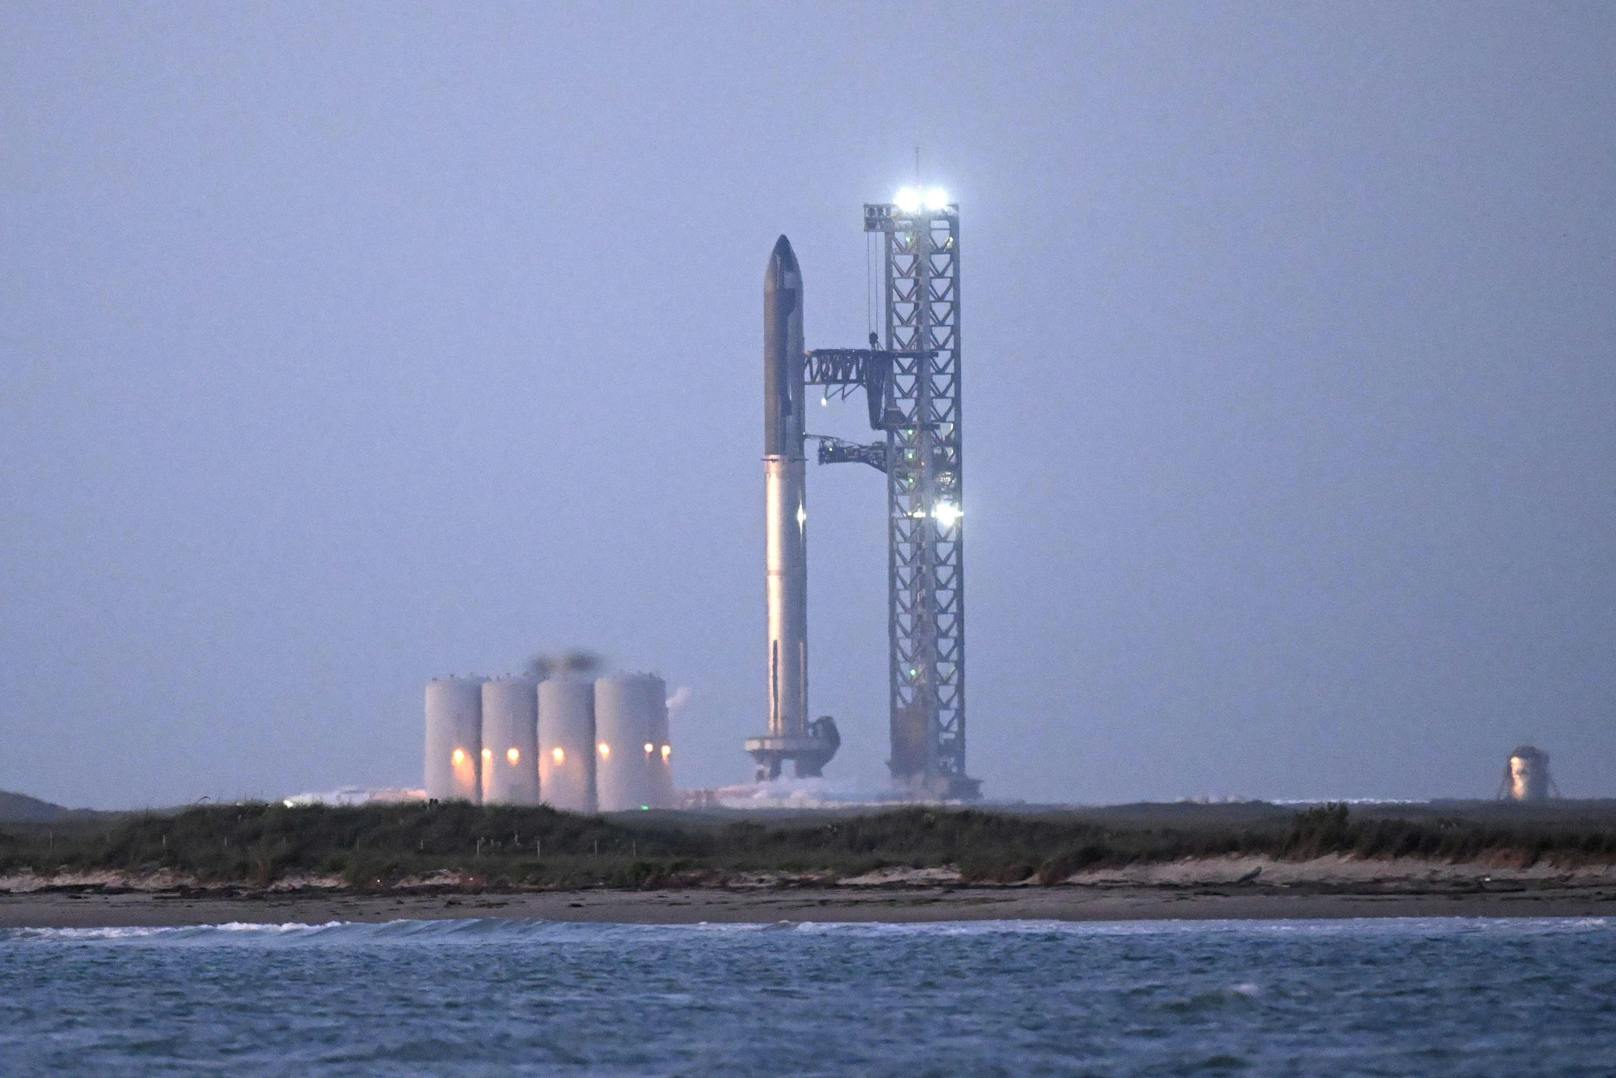 Um 15:20 wird Elon Musks Starship Rakete ihren Testflug starten. 